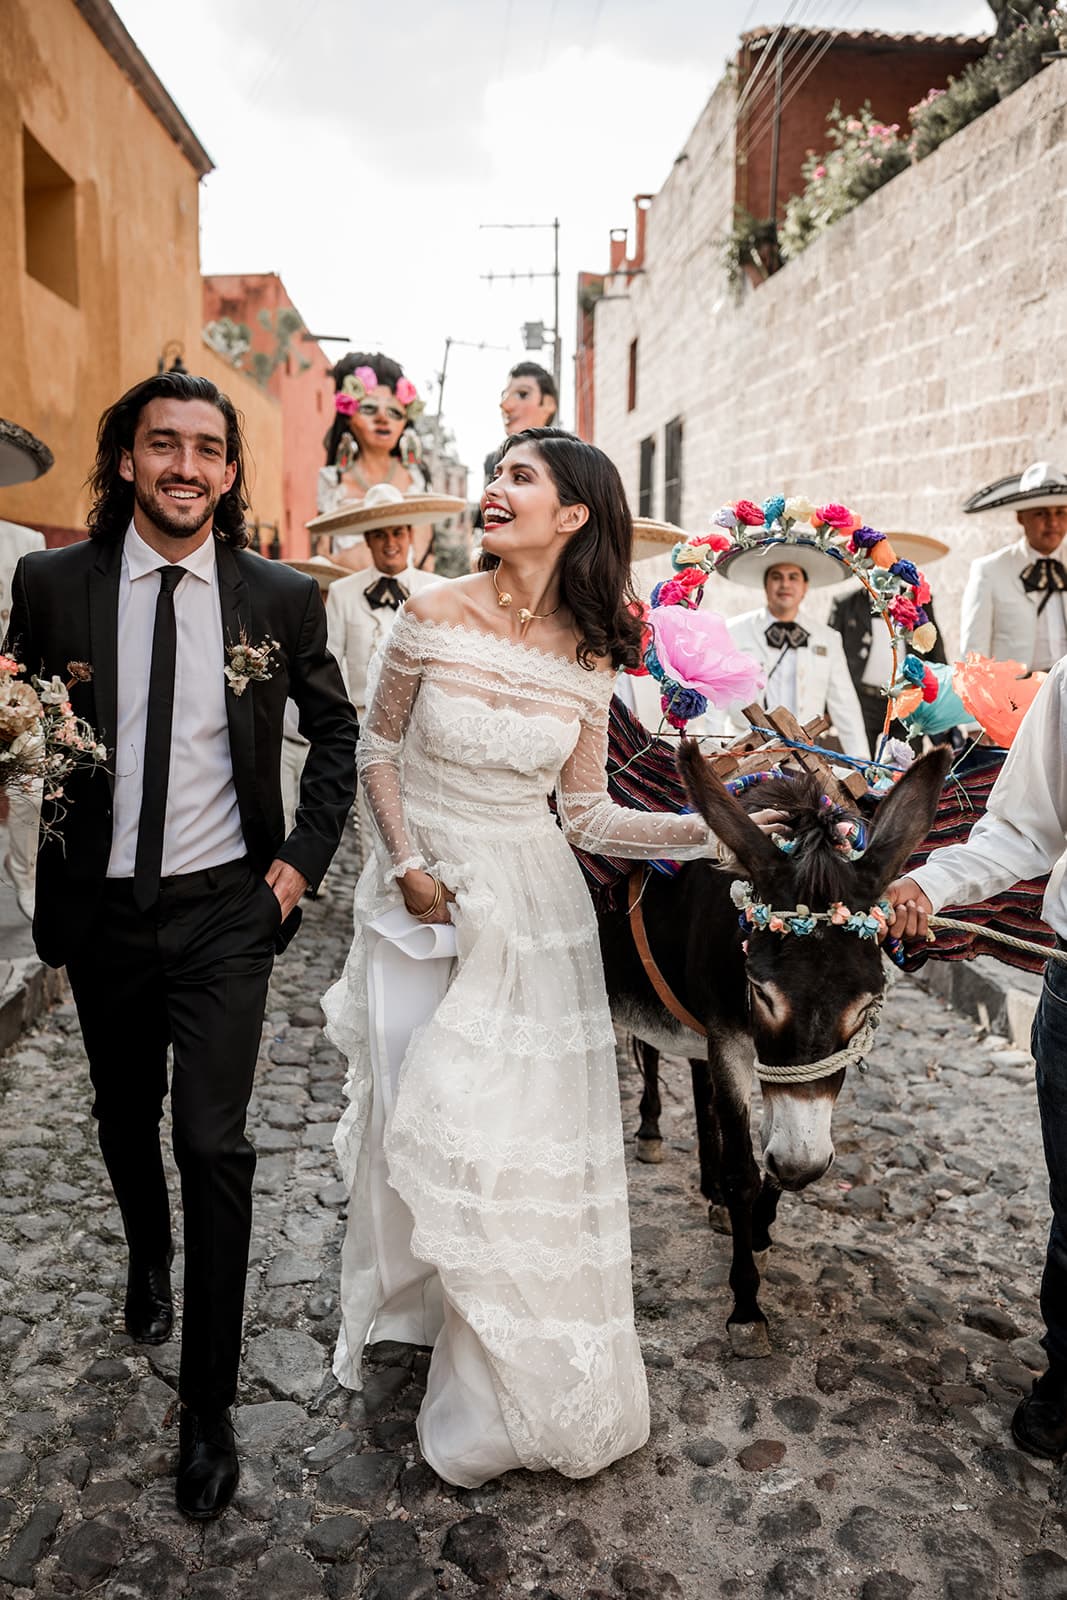 Bride and groom walk for traditional San Miguel de Allende wedding parade